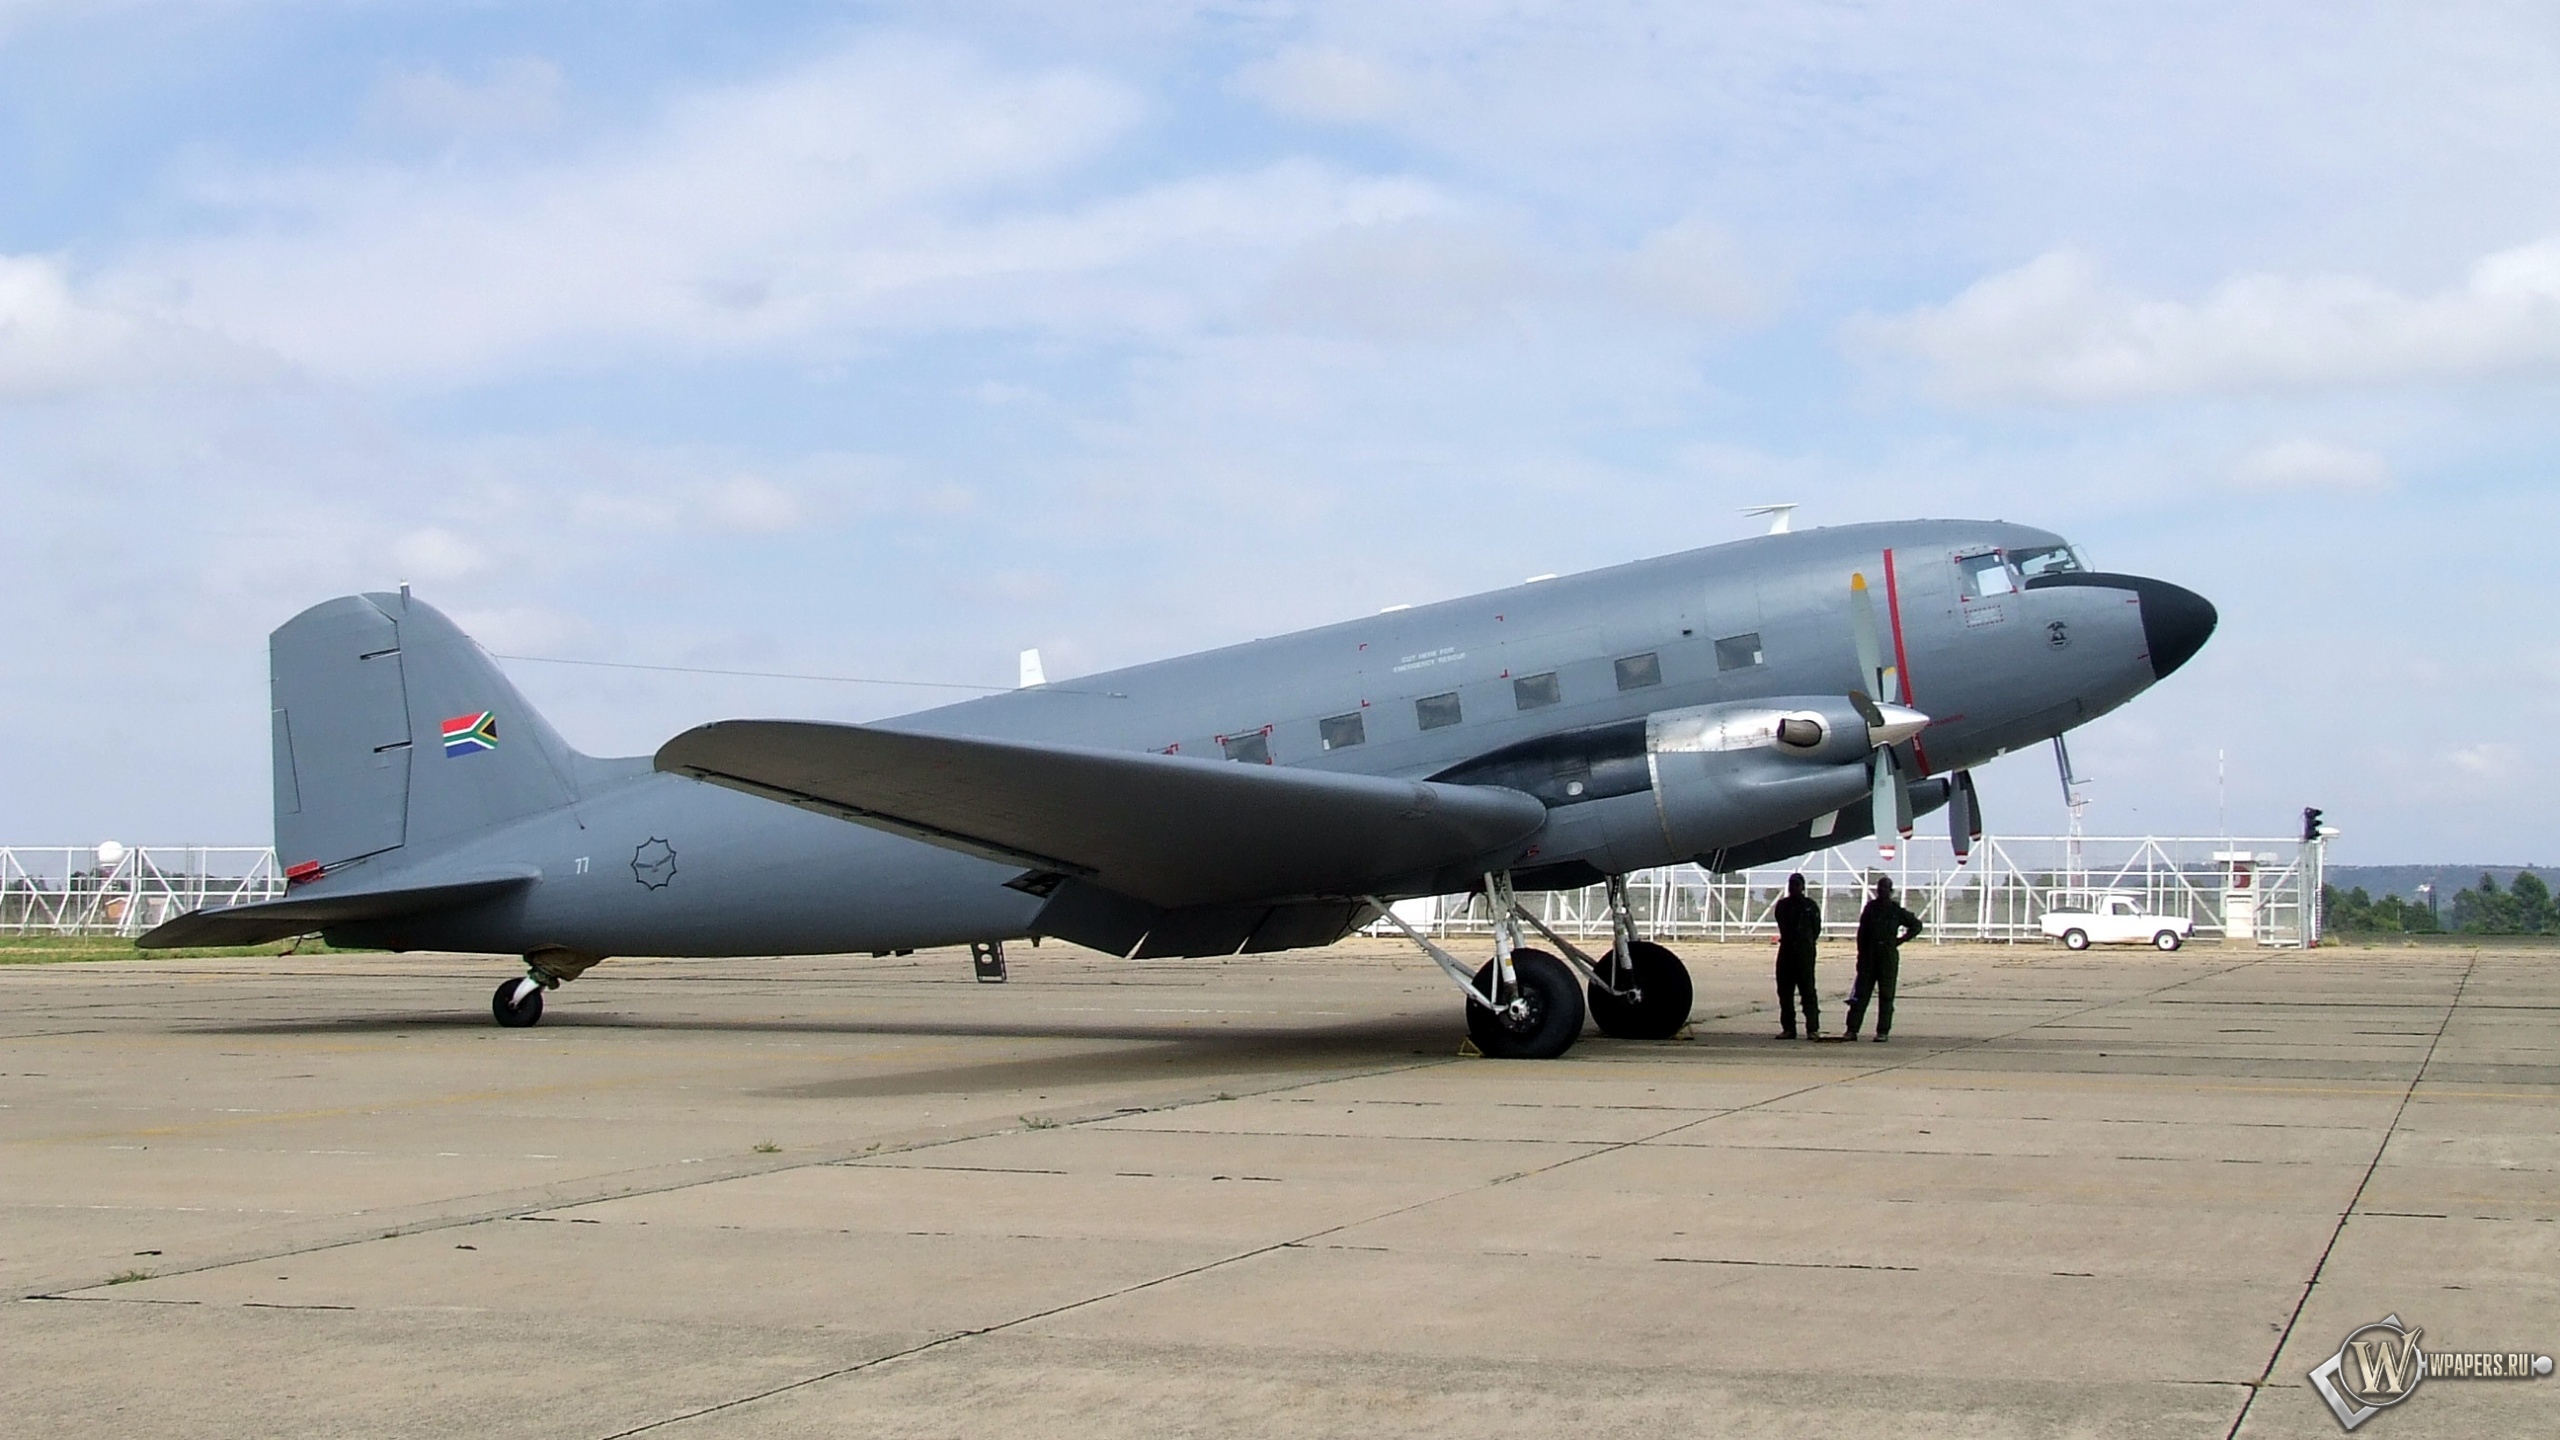 Douglas C-47 2560x1440